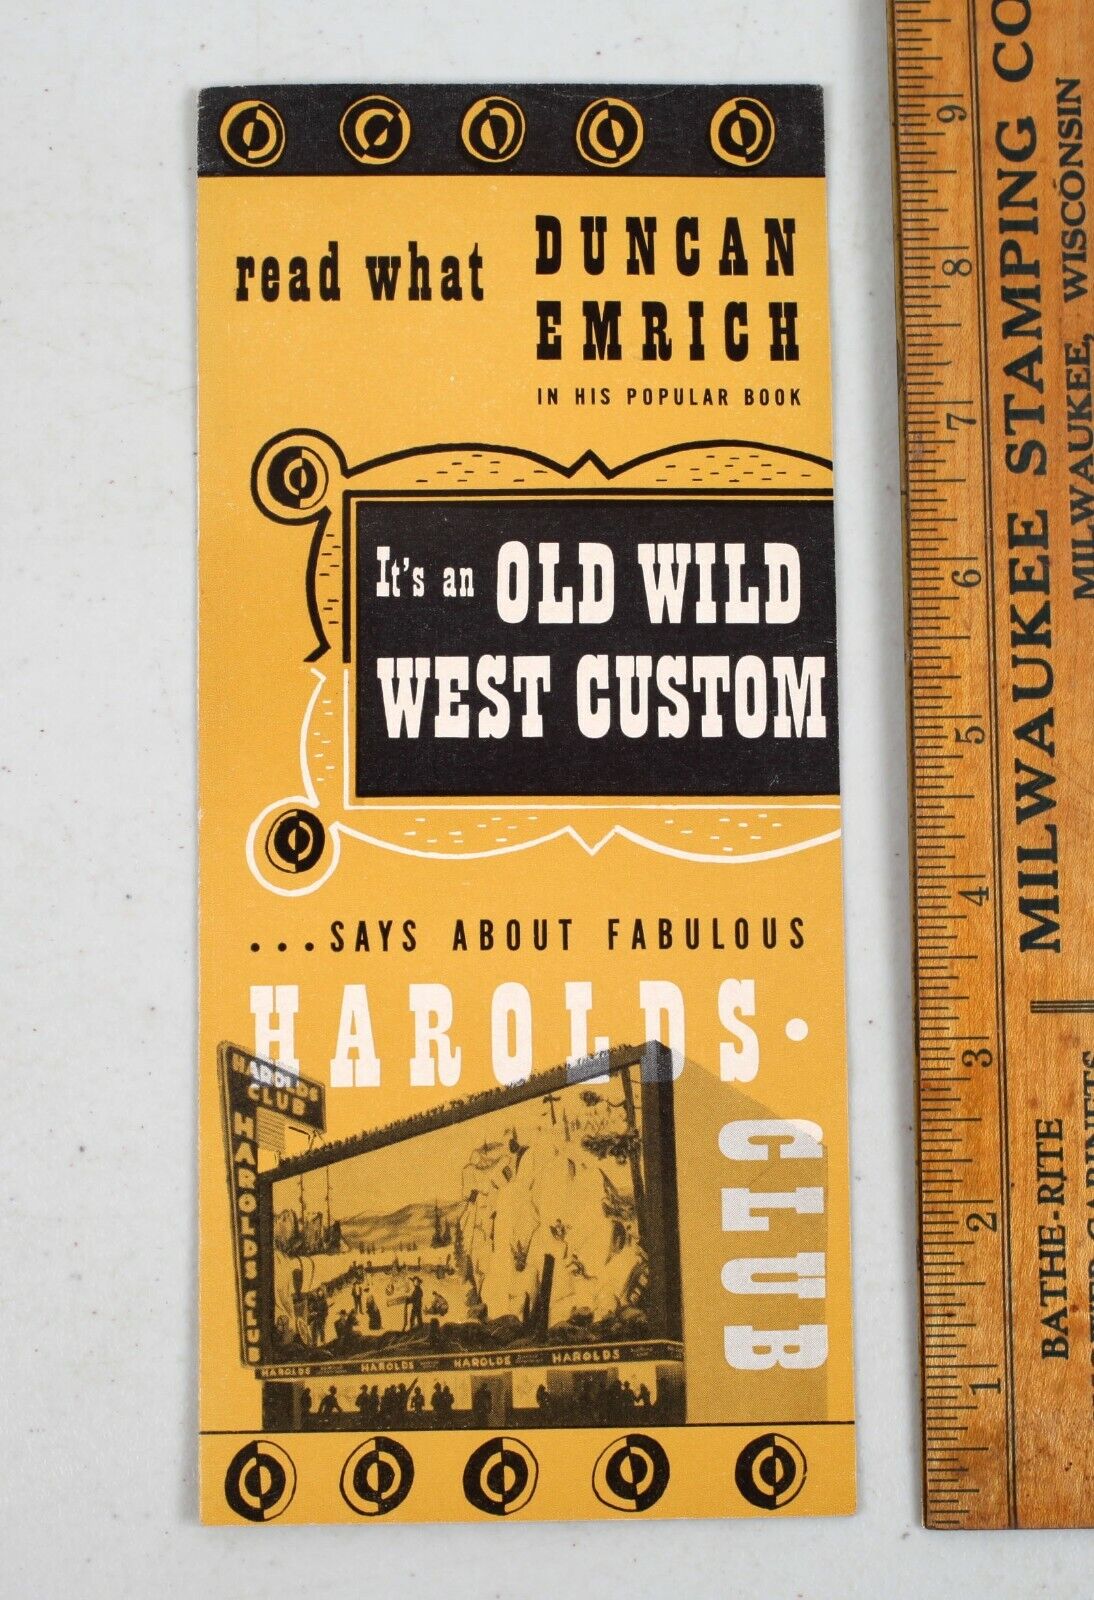 Vintage 1949 Harolds Club Reno Promotion Duncan Emrich Travel Brochure Pamphlet